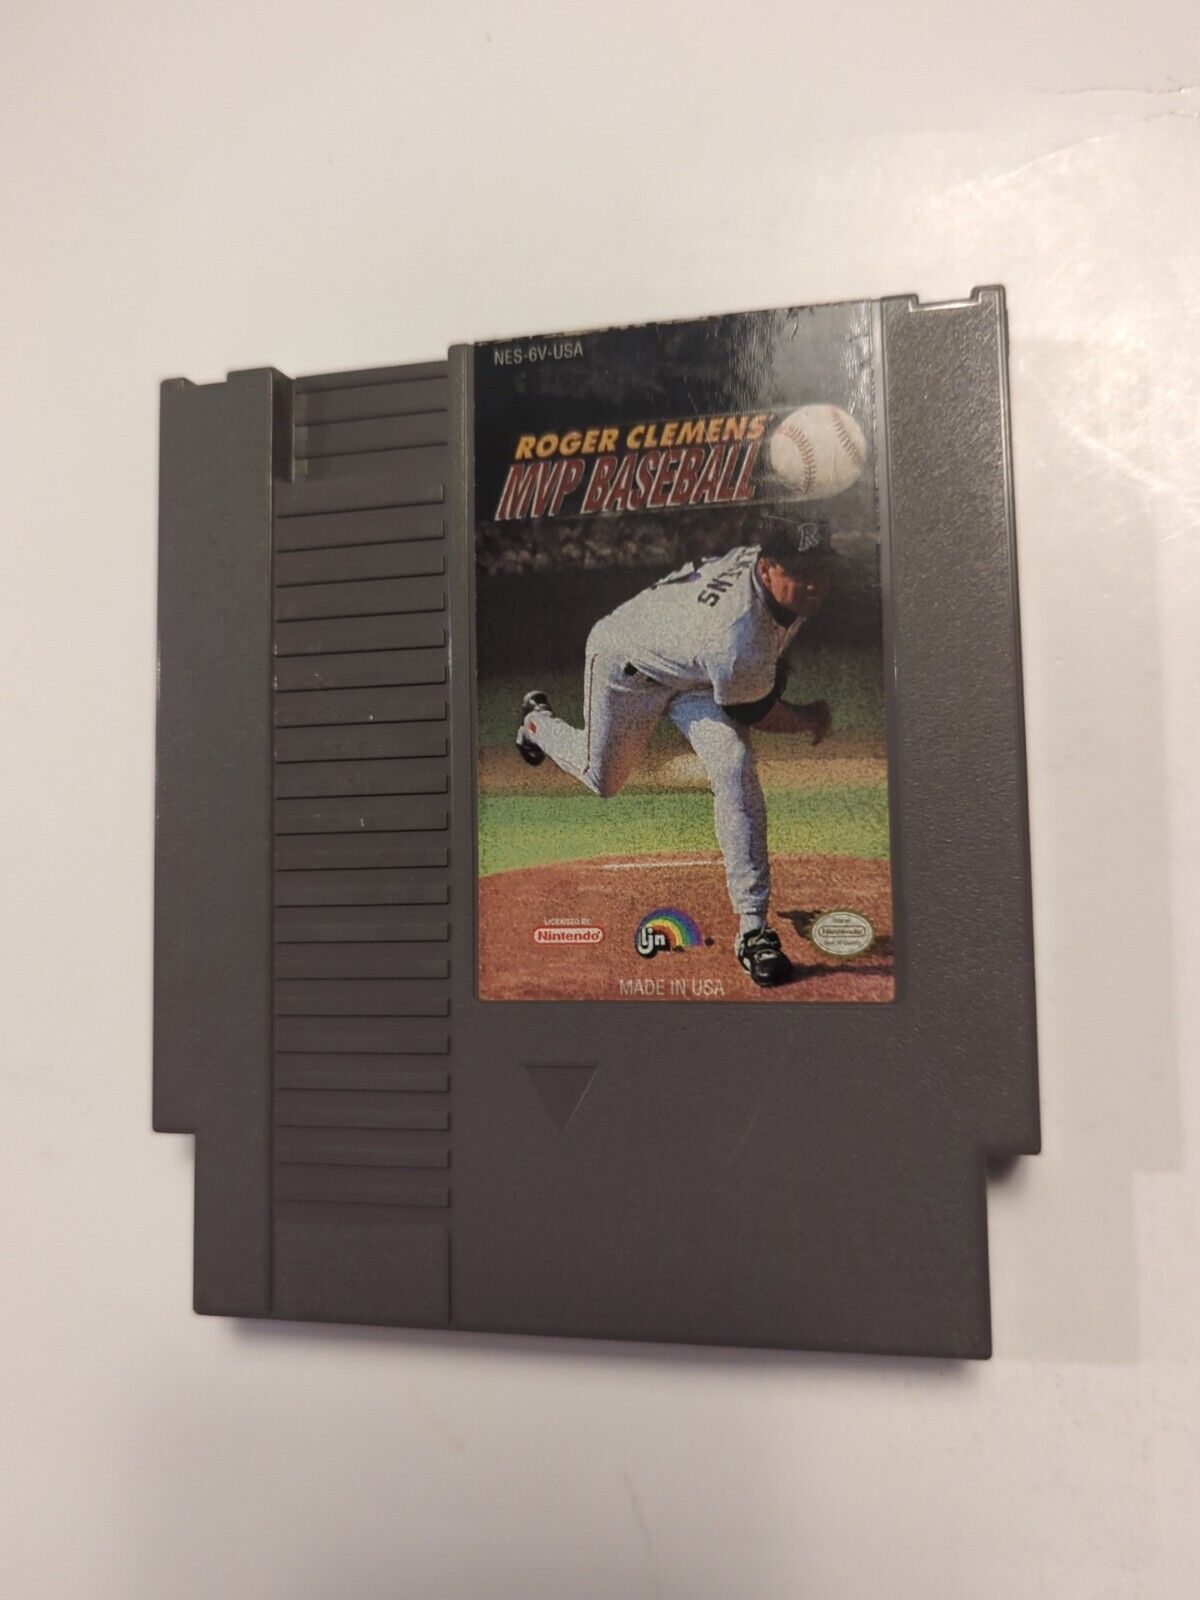 Roger Clemens' MVP Baseball, NES Game Cartridge Only, Nintendo, Free Ship